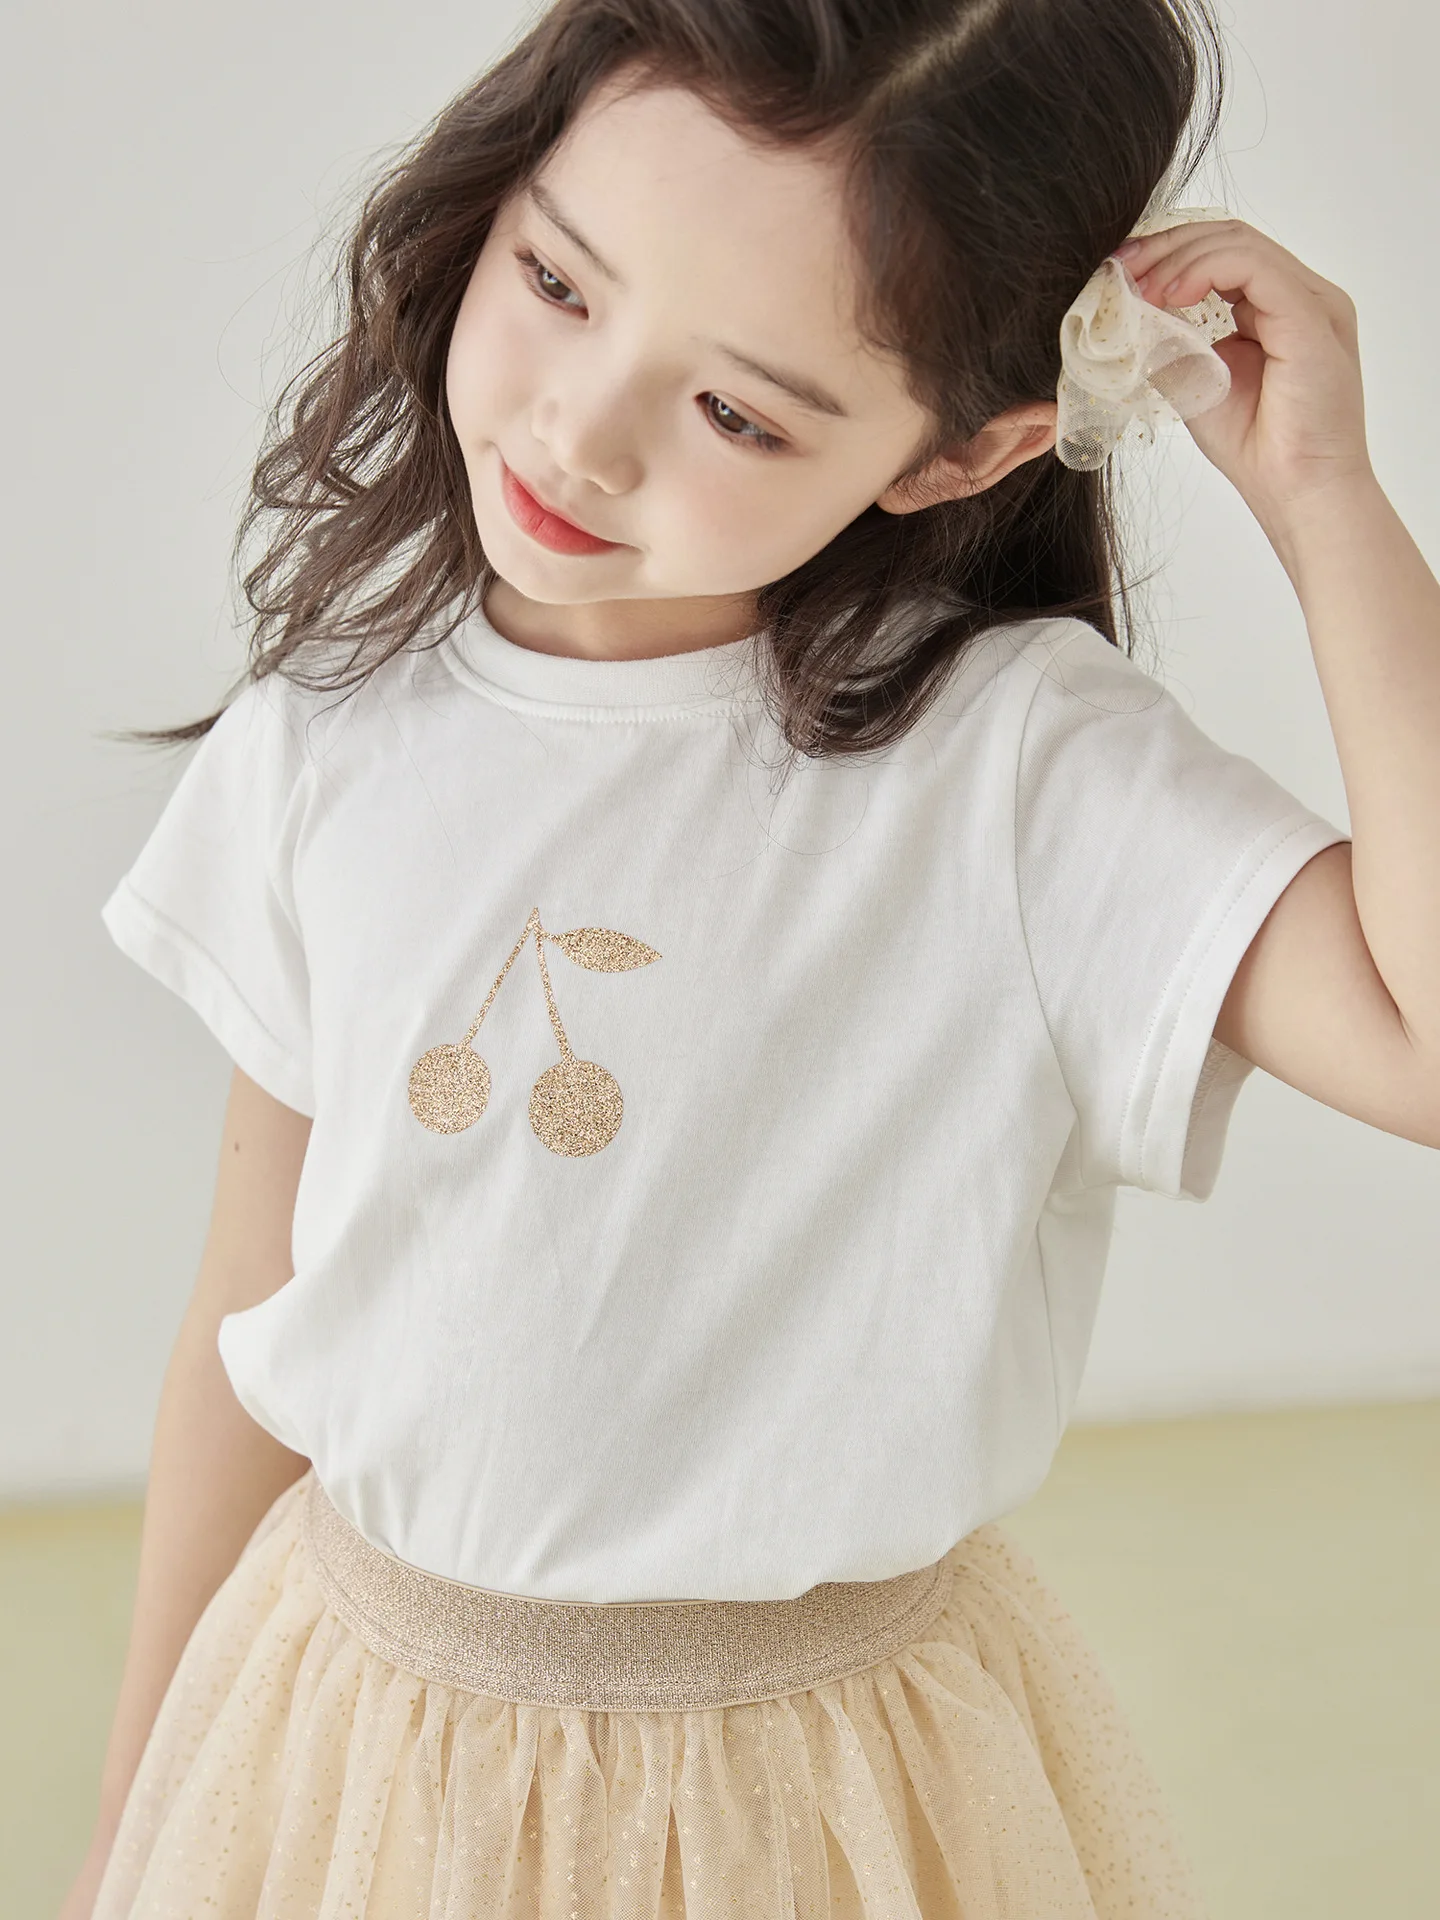 

Летняя футболка для девочек BP 2023, платье с принтом вишни, детская блузка, брендовая одежда, размер 4, 6, 8, 10, 12, 14Y